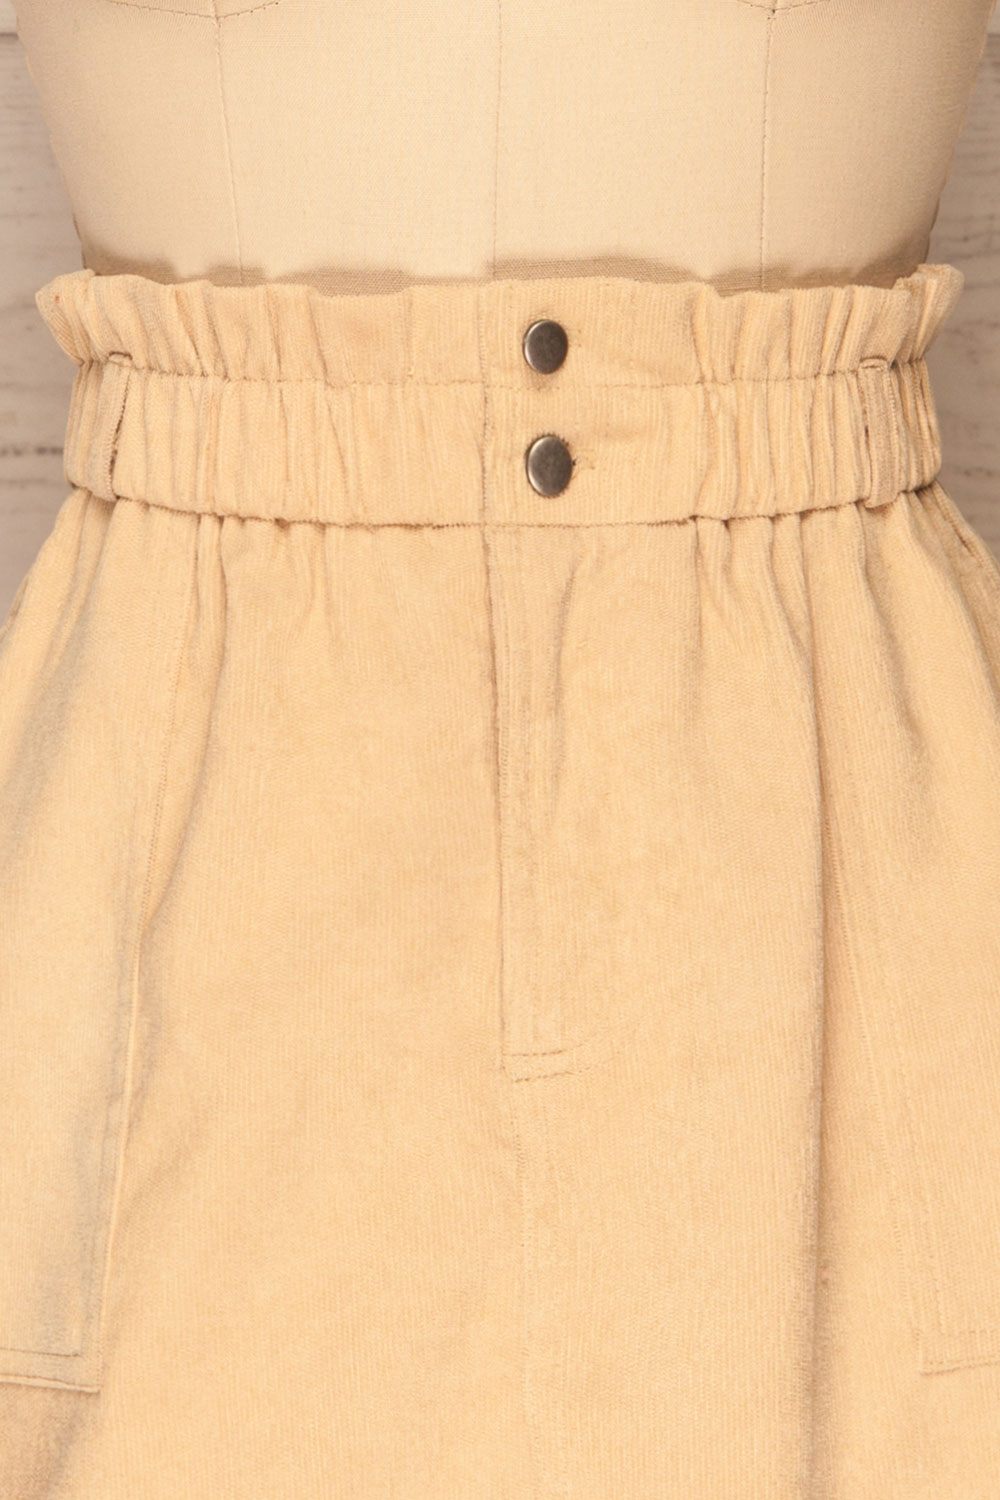 Loxley Beige Corduroy Mini Skirt | La Petite Garçonne front close-up